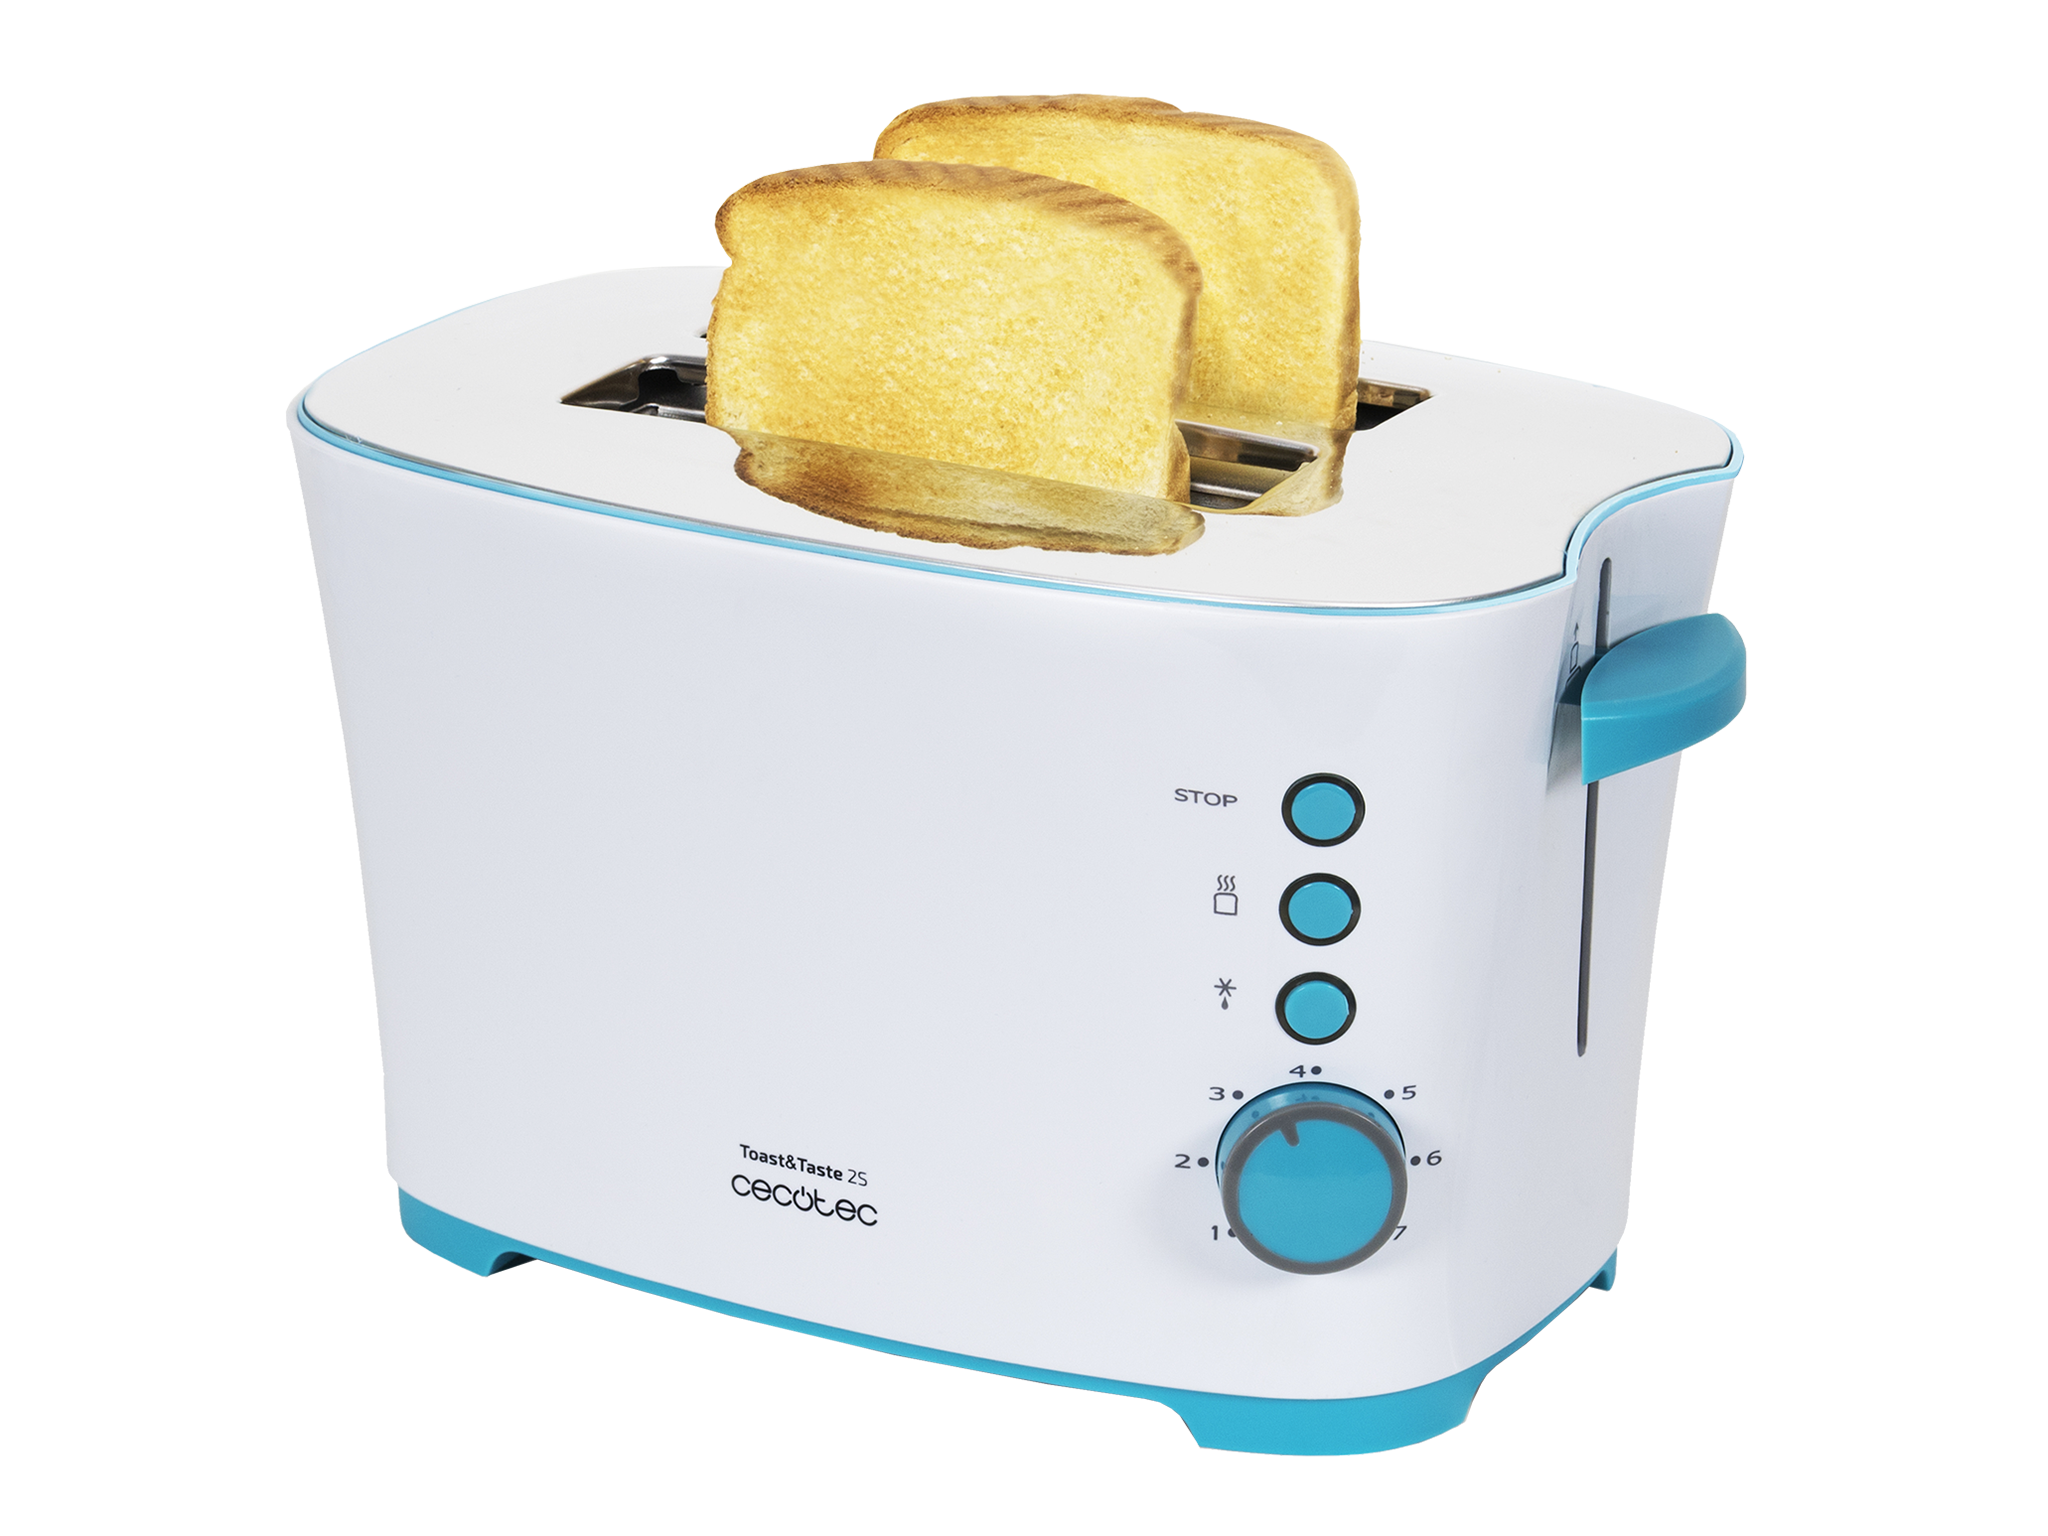 Toast&Taste 2S - Tostapane, 7 livelli di potenza, capienza per 2 toast, 3 funzioni (tostare, riscaldare, scongelare), include supporto per prodotti da forno, cassettino raccoglibriciole, 650 W